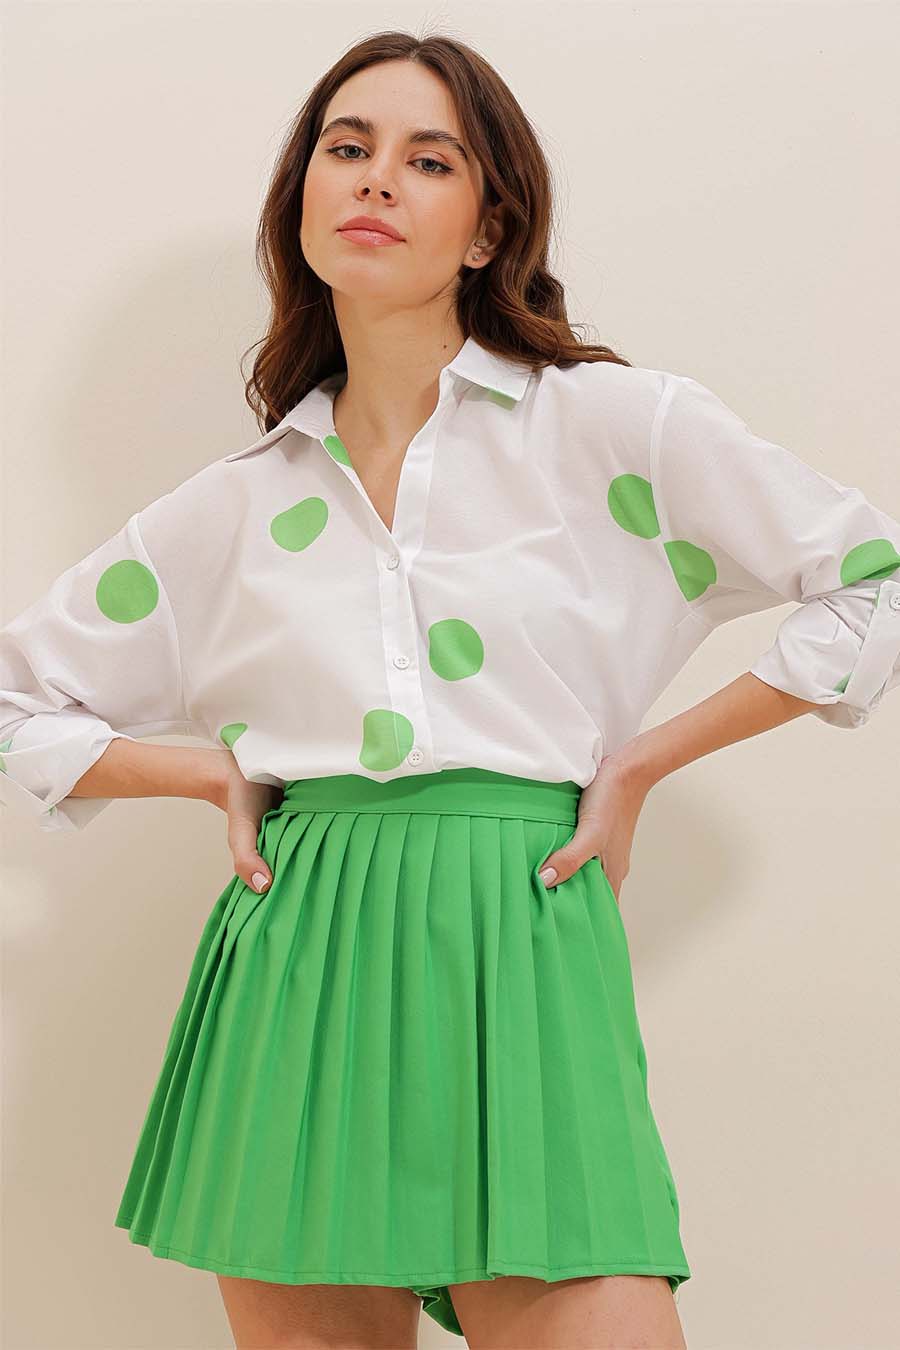 Γυναικείο πουκάμισο Millie, Λευκό/Πράσινο 4